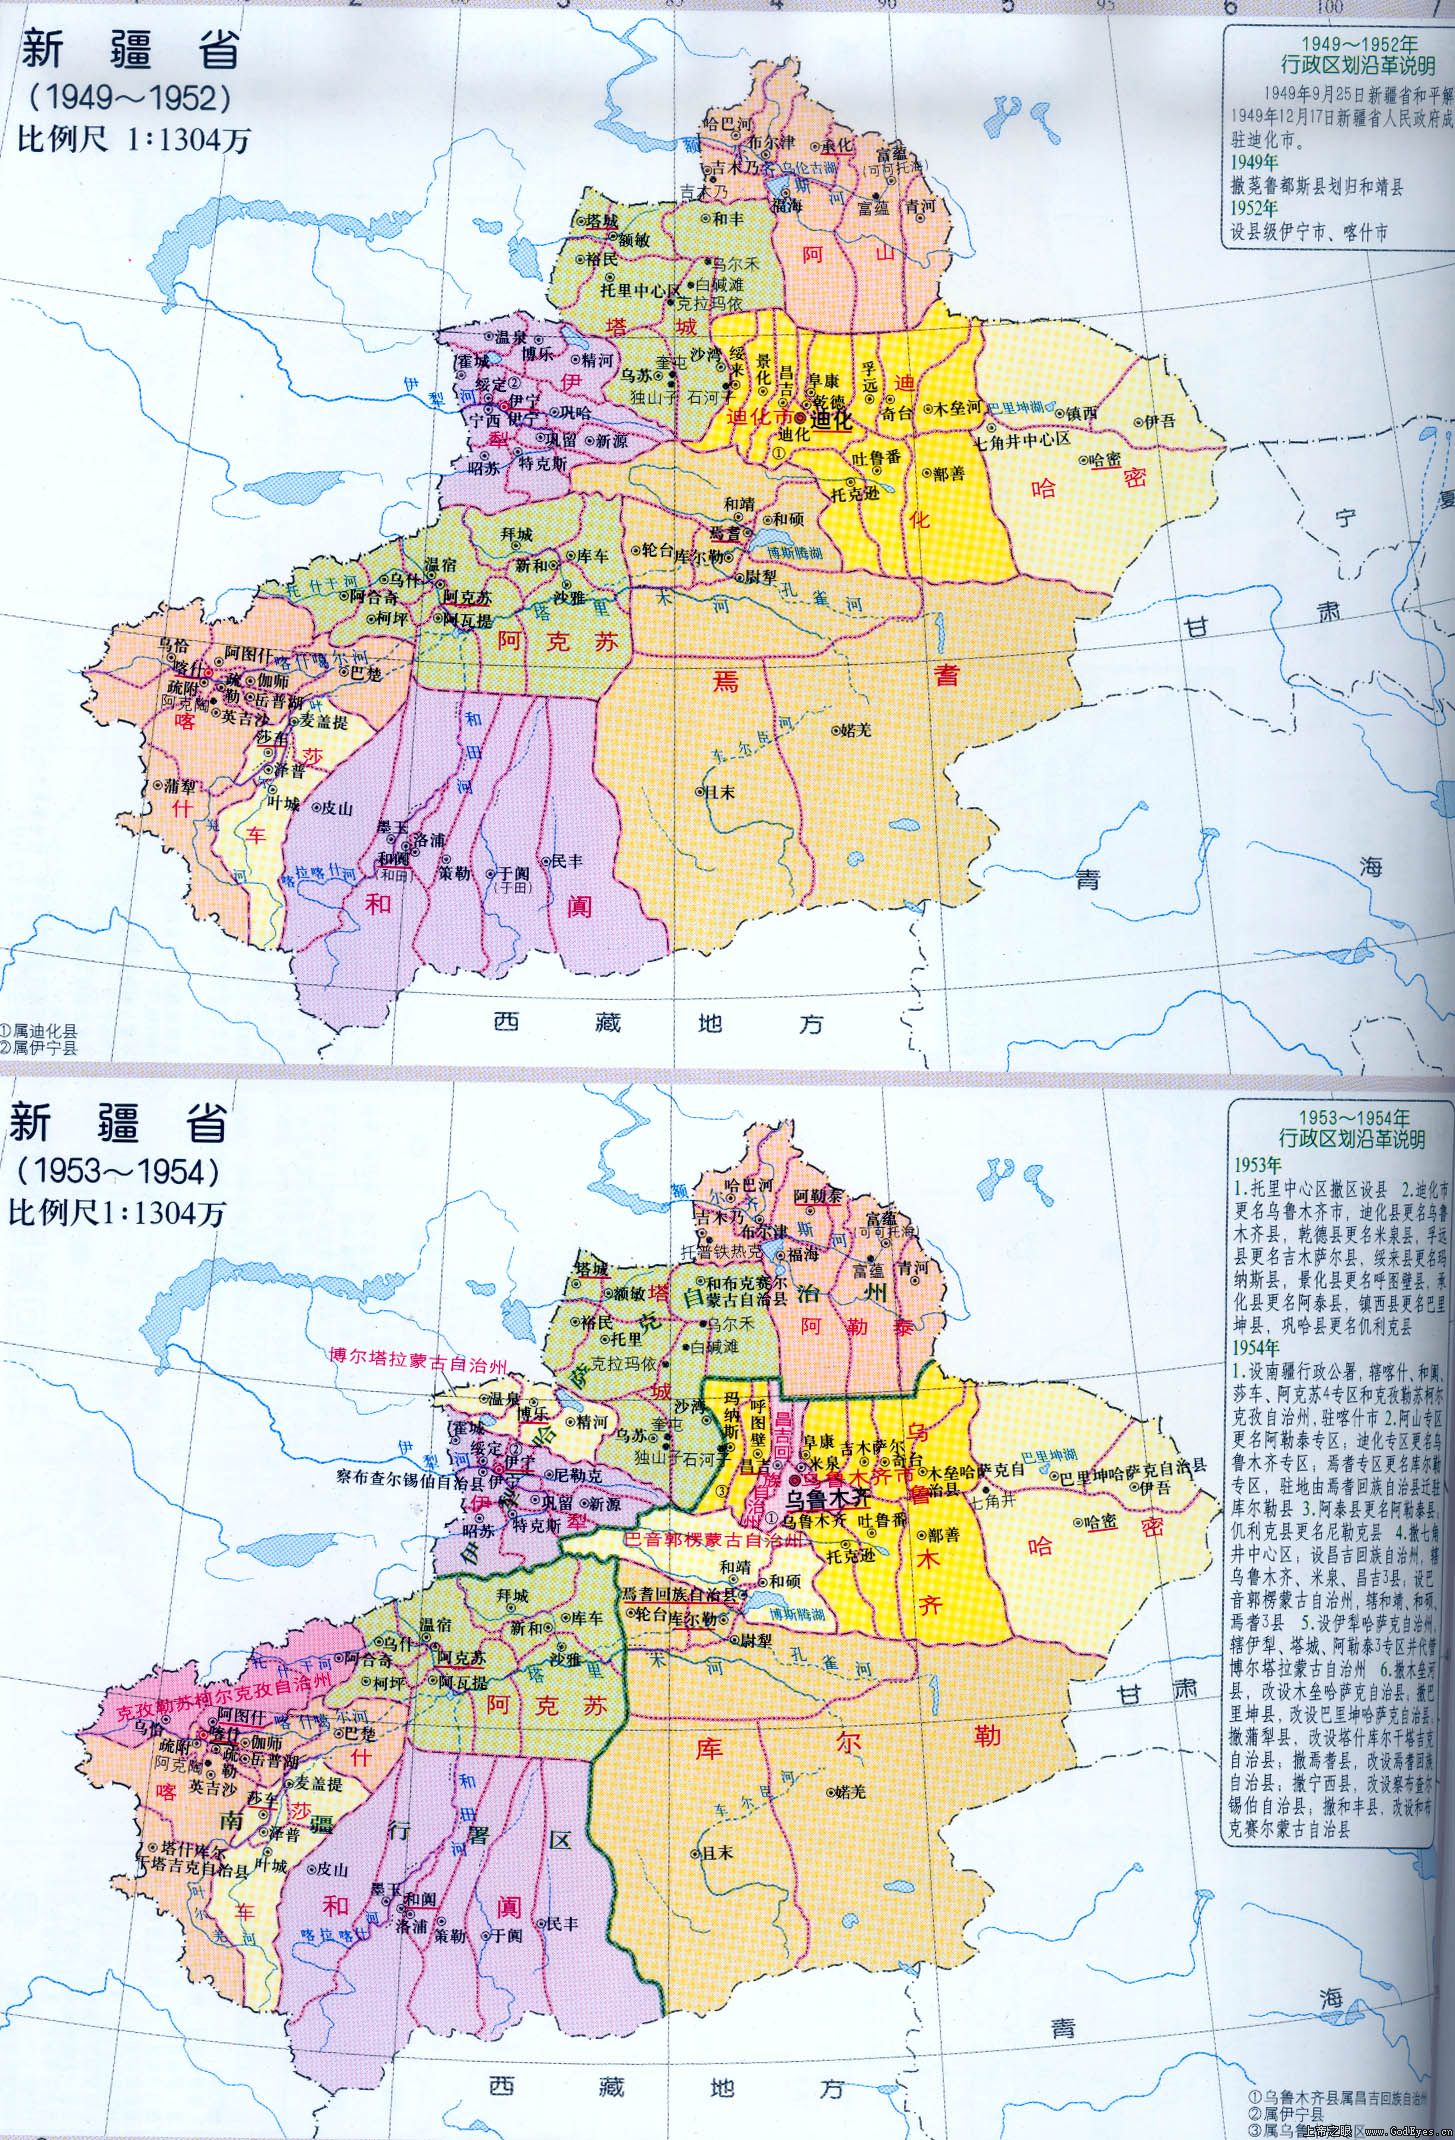 新疆省时代的昌吉州才管辖昌吉,米泉和乌鲁木齐县这3个县,其余全属于图片